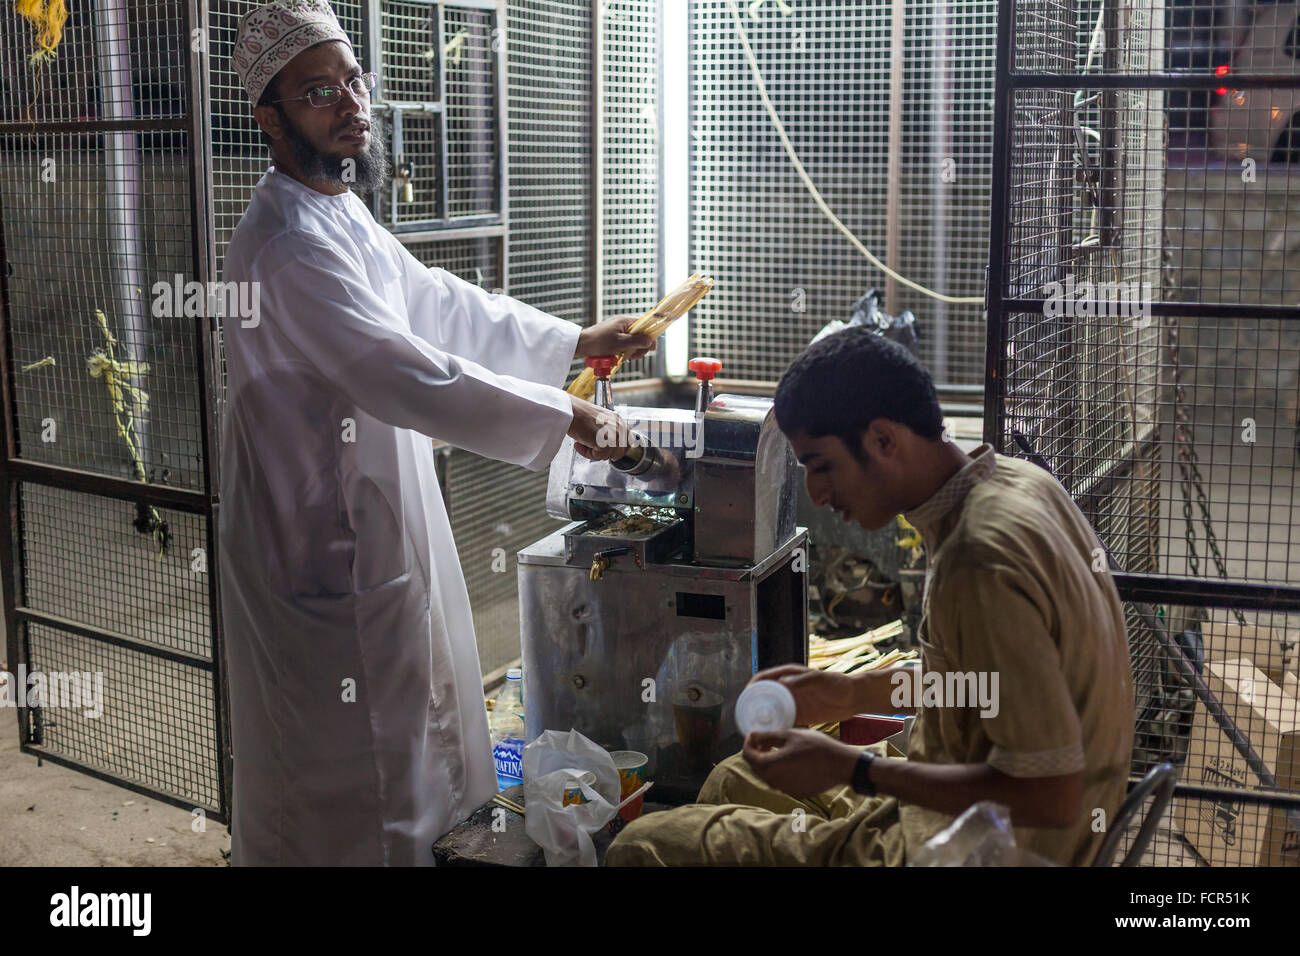 NIZWA, OMAN - NOV 25: Omani man selling freshly made bamboo juice in Nizwa at night. November 25, 2015 in Nizwa, Sultanate of Om Stock Photo